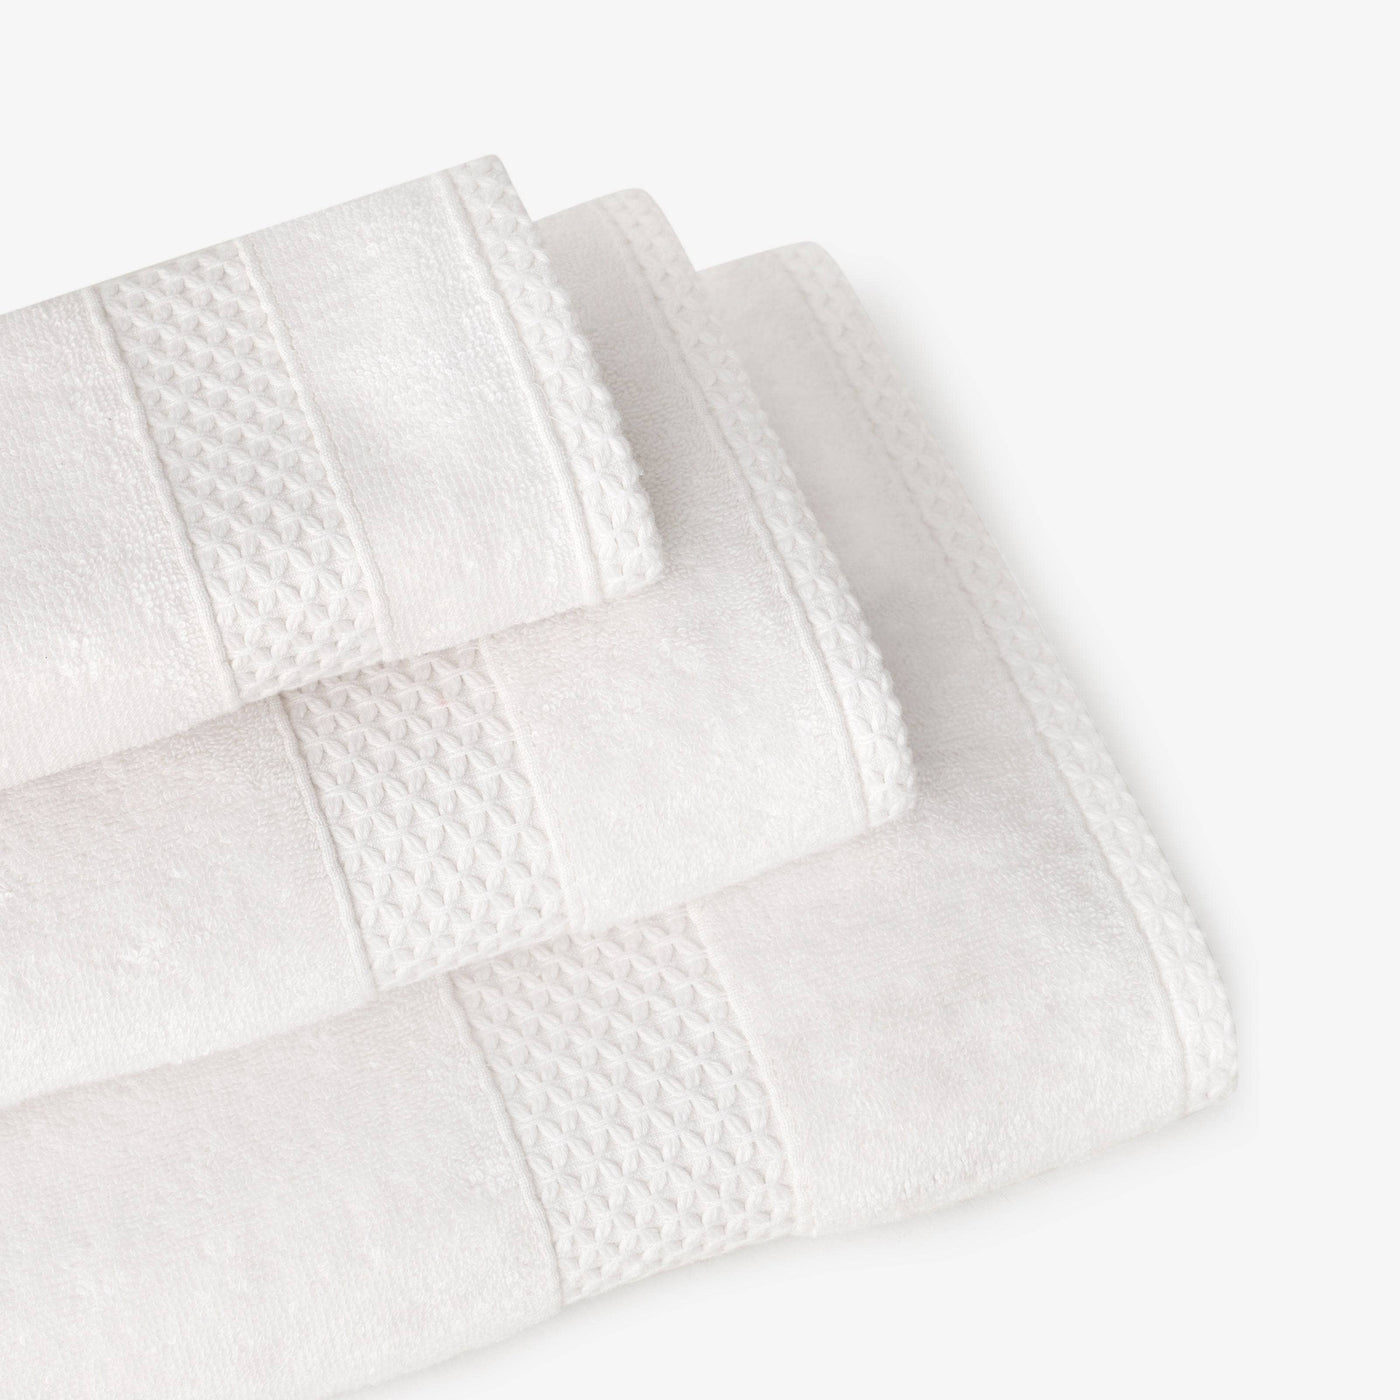 Aqua Fibro Set of 4 Extra Soft 100% Turkish Cotton Face Cloth, Off-White, 33x33 cm 4